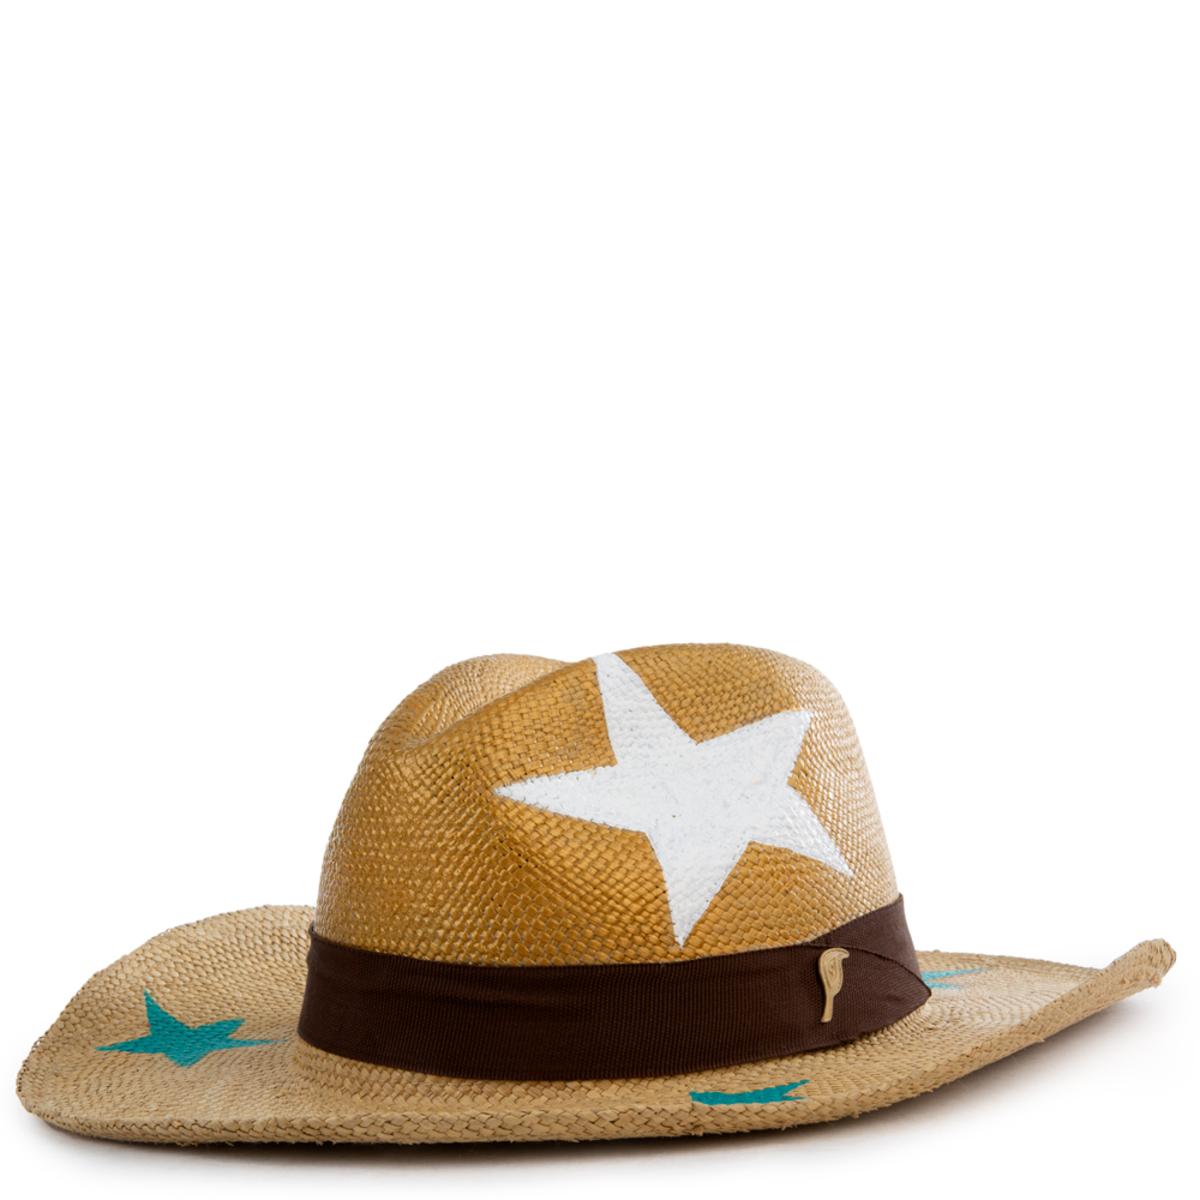 Estrellas Panama Hat